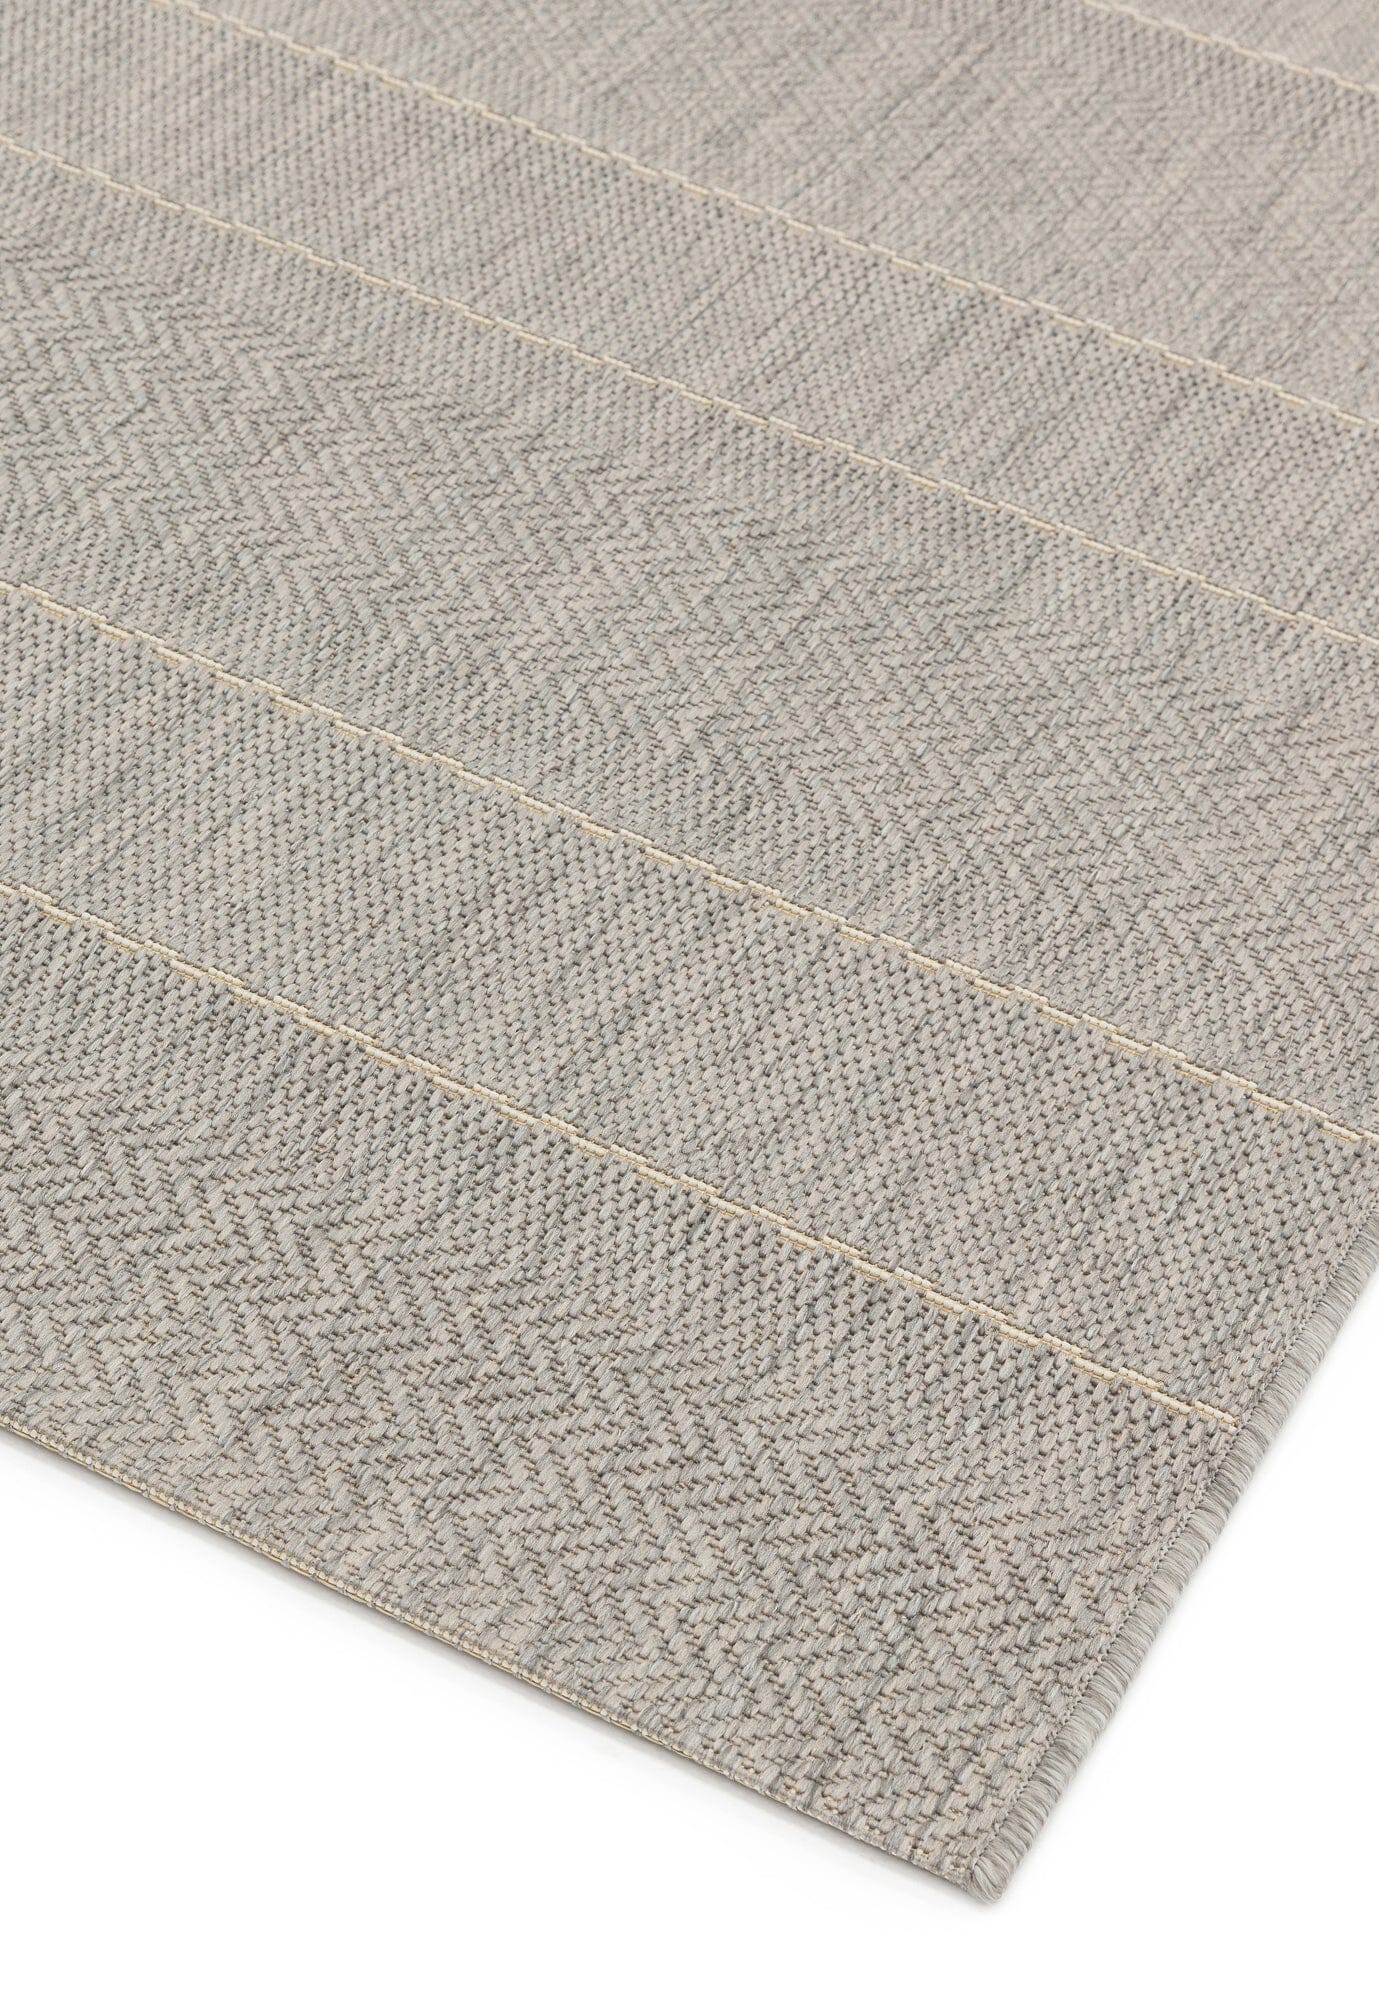  Asiatic Carpets-Asiatic Carpets Patio Machine Woven Rug Beige Stripe - 200 x 290cm-Beige, Natural 205 